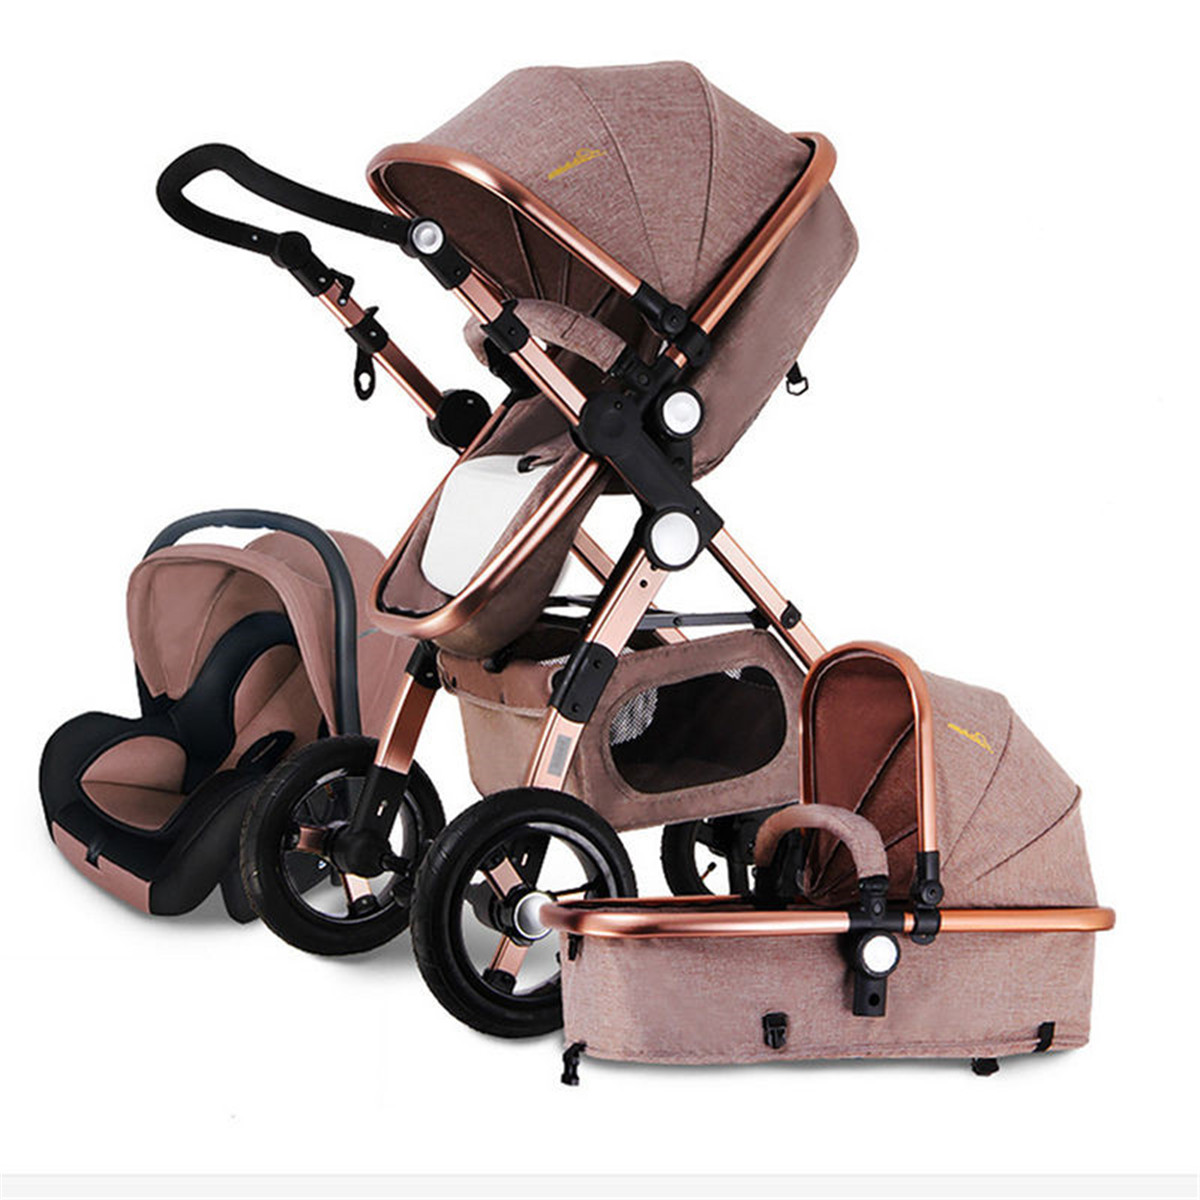 

Banggood 3 IN 1 Многофункциональная прогулочная коляска для младенцев High View Pram Складная коляска Bassette Авто Seat